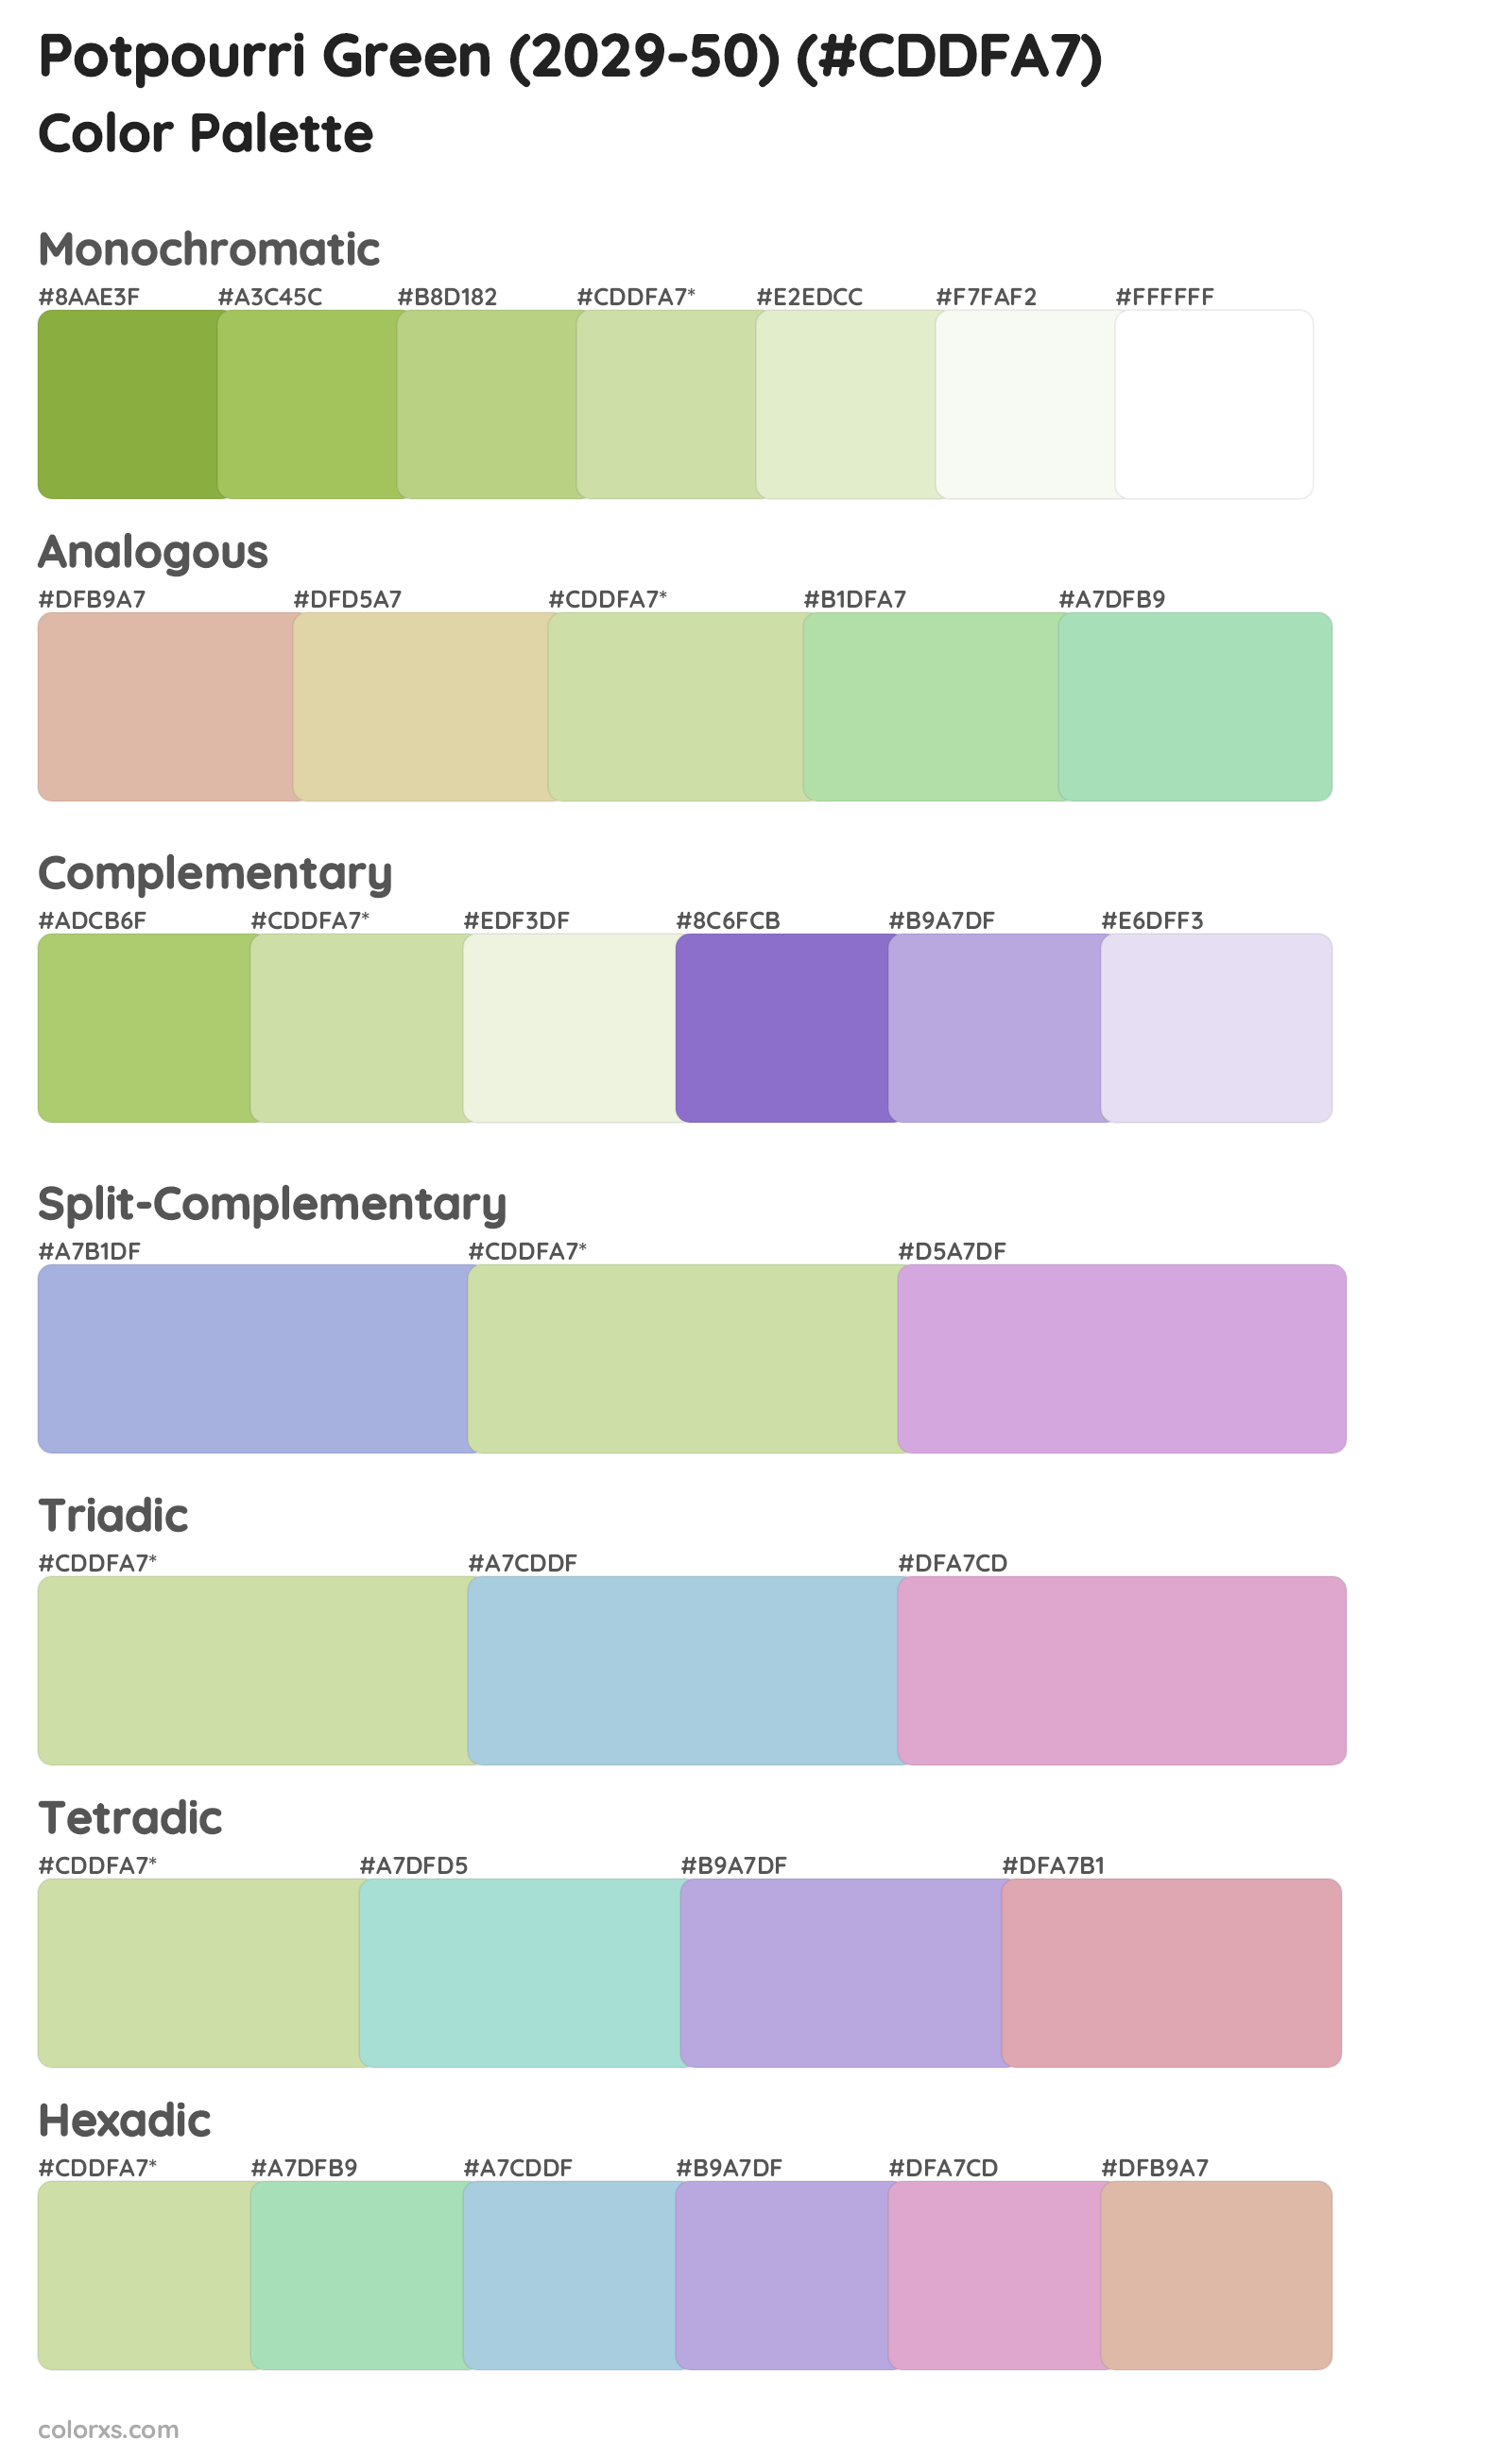 Potpourri Green (2029-50) Color Scheme Palettes